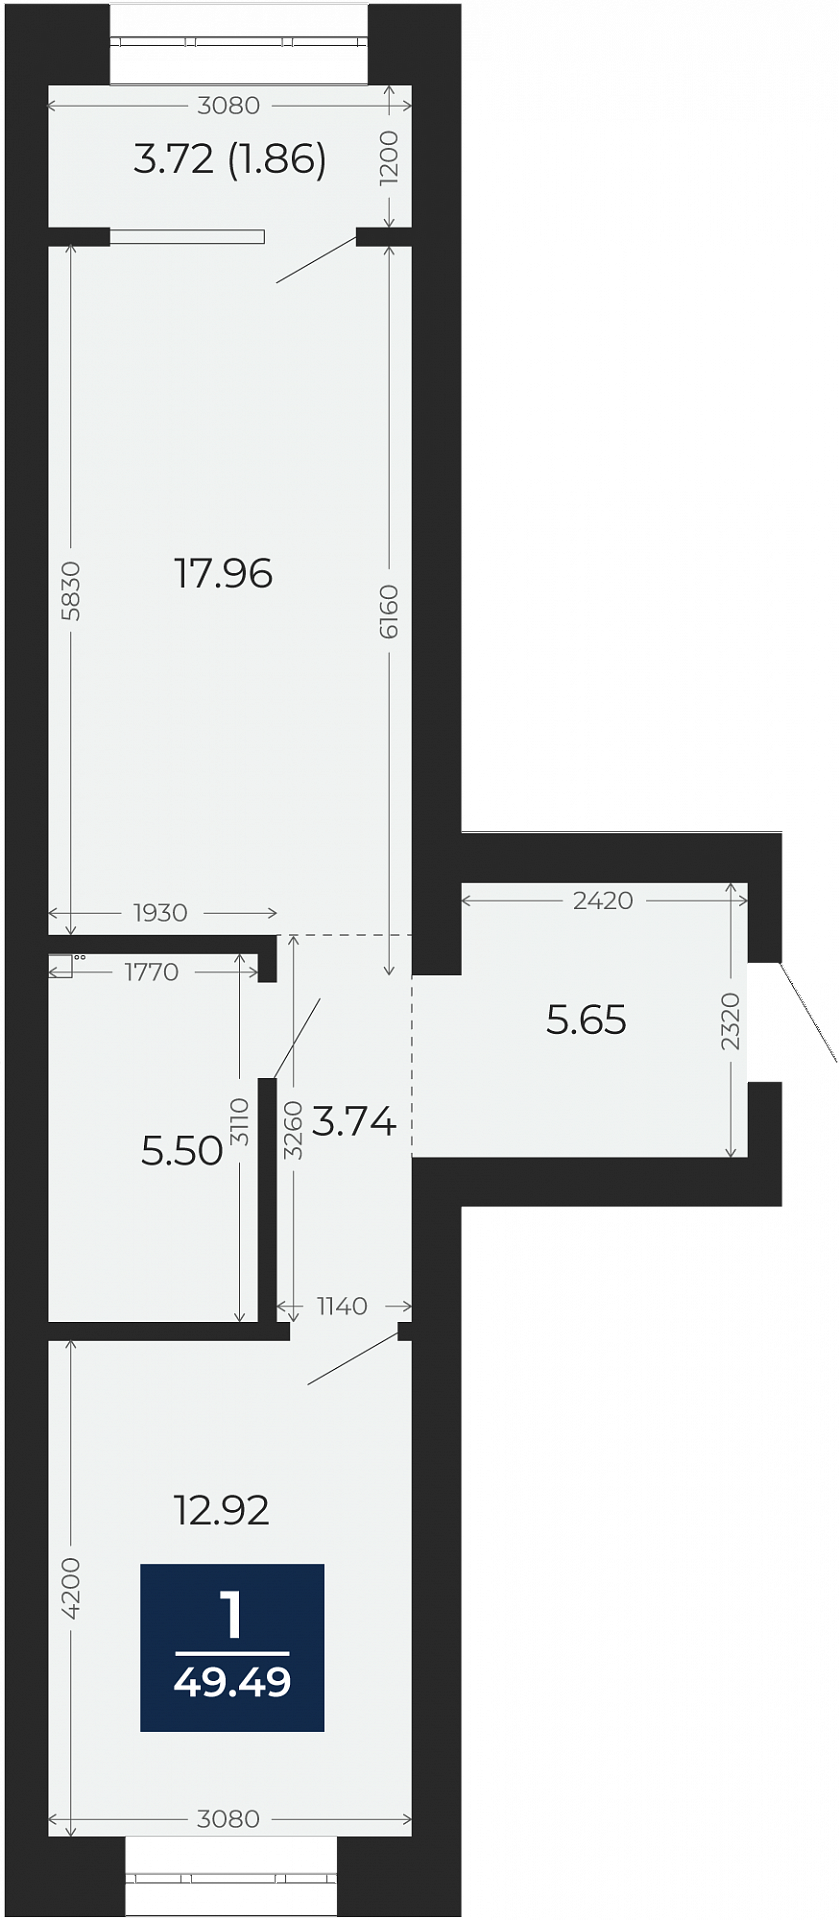 Квартира № 44, 1-комнатная, 49.49 кв. м, 8 этаж